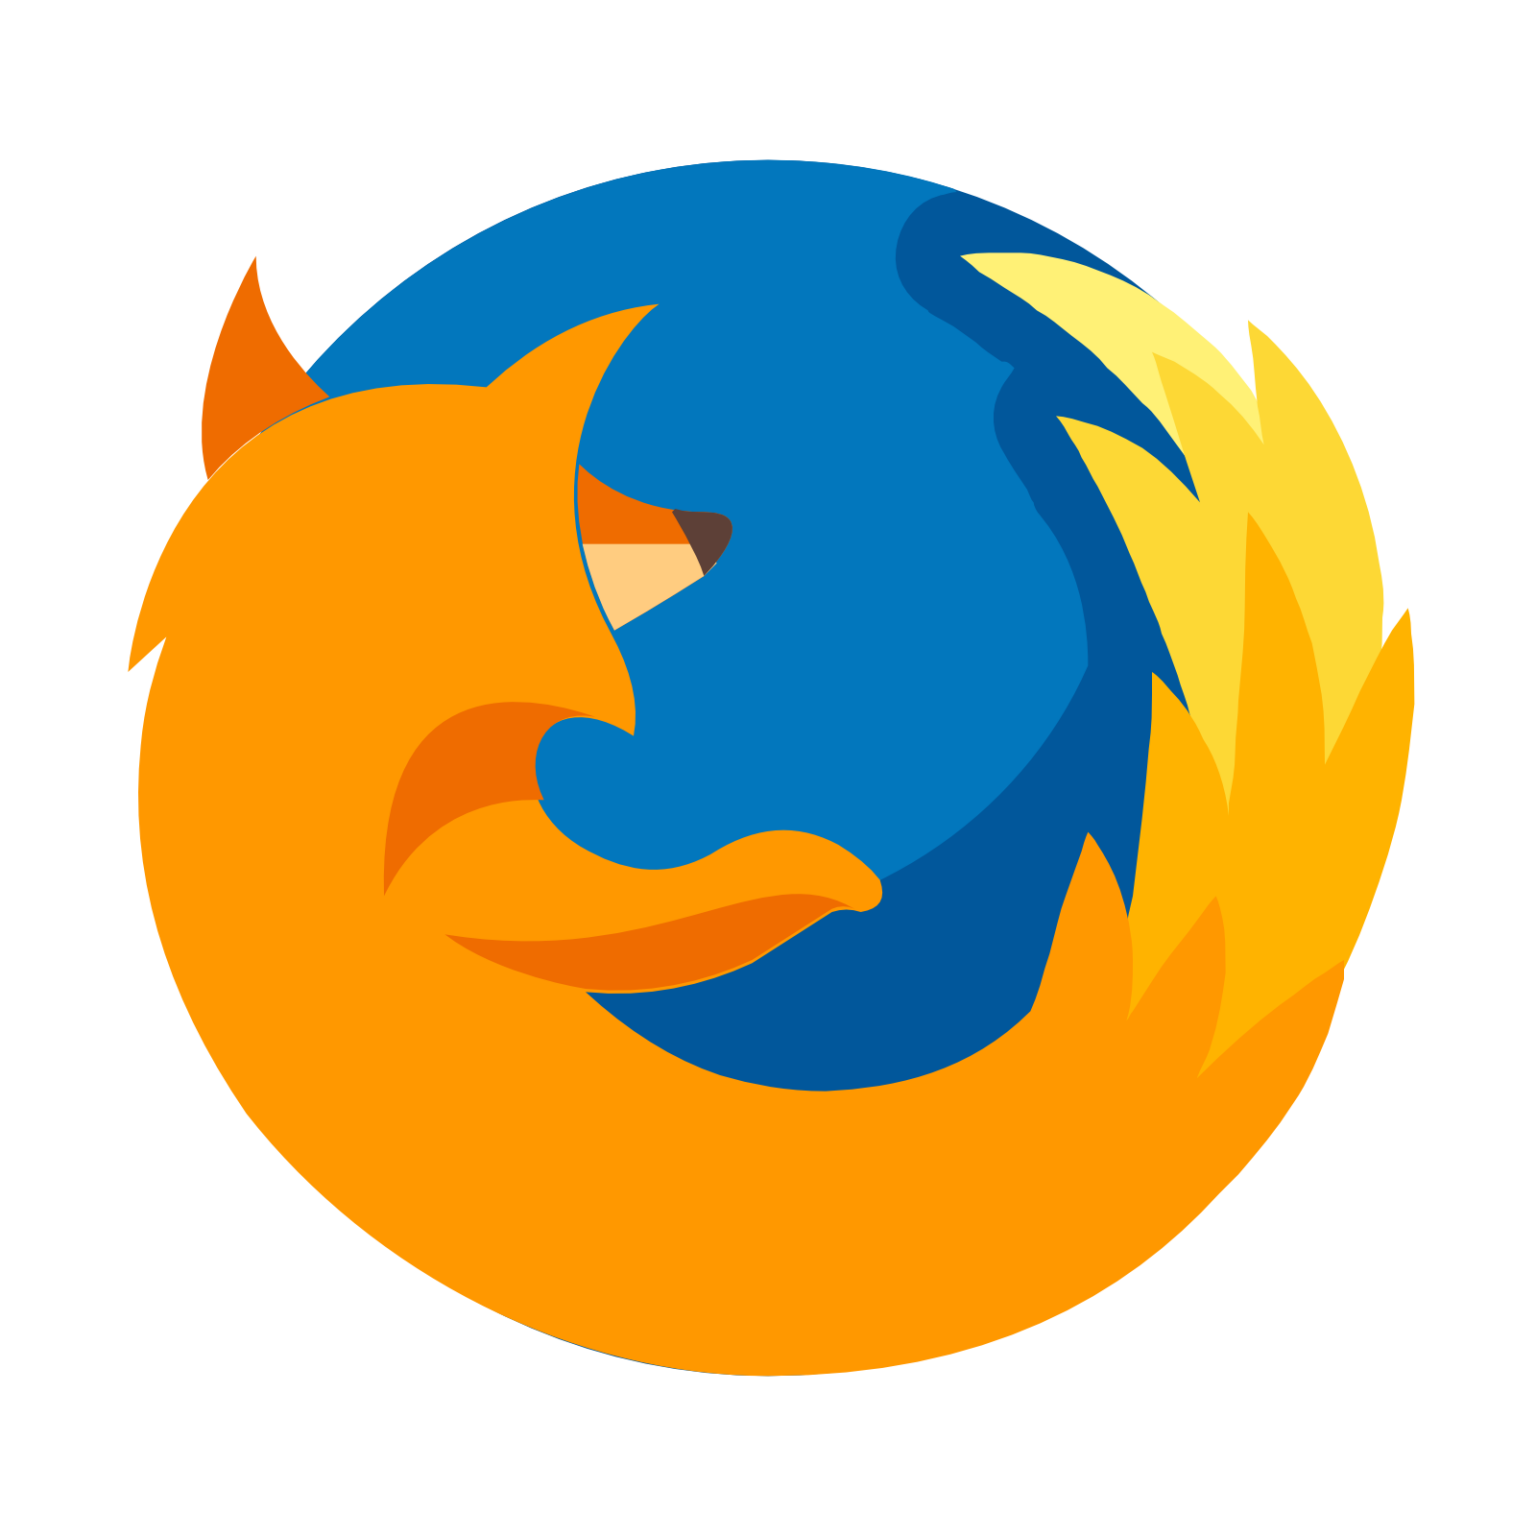 Ярлык firefox. Mozilla Firefox логотип. Значок браузера Mozilla Firefox. Мозилла Firefox значок. Firefox браузер лого.